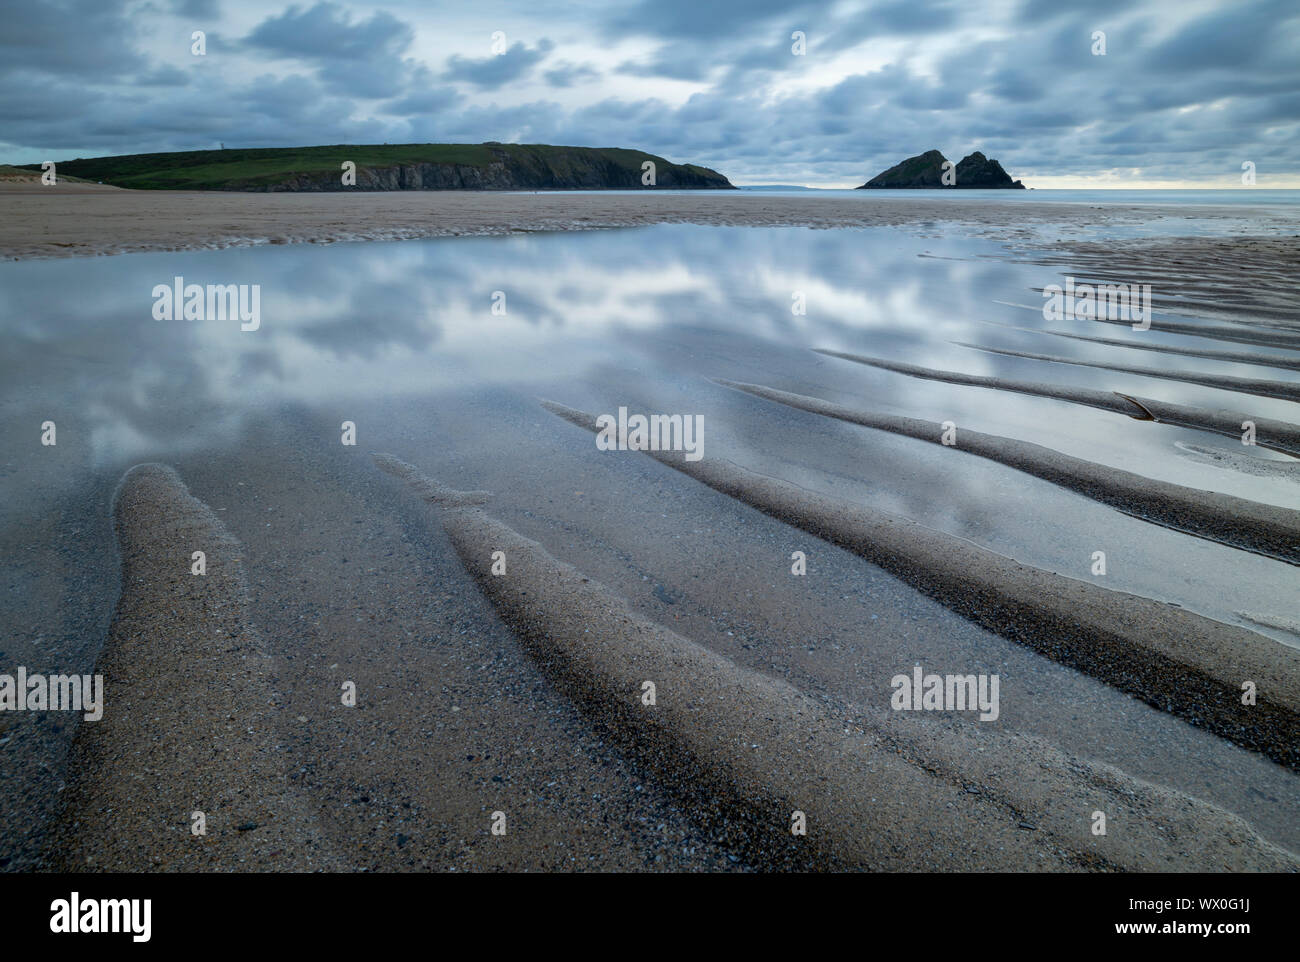 Les bassins de marée sur la plage de sable de la baie de Holywell, Cornwall, Angleterre, Royaume-Uni, Europe Banque D'Images